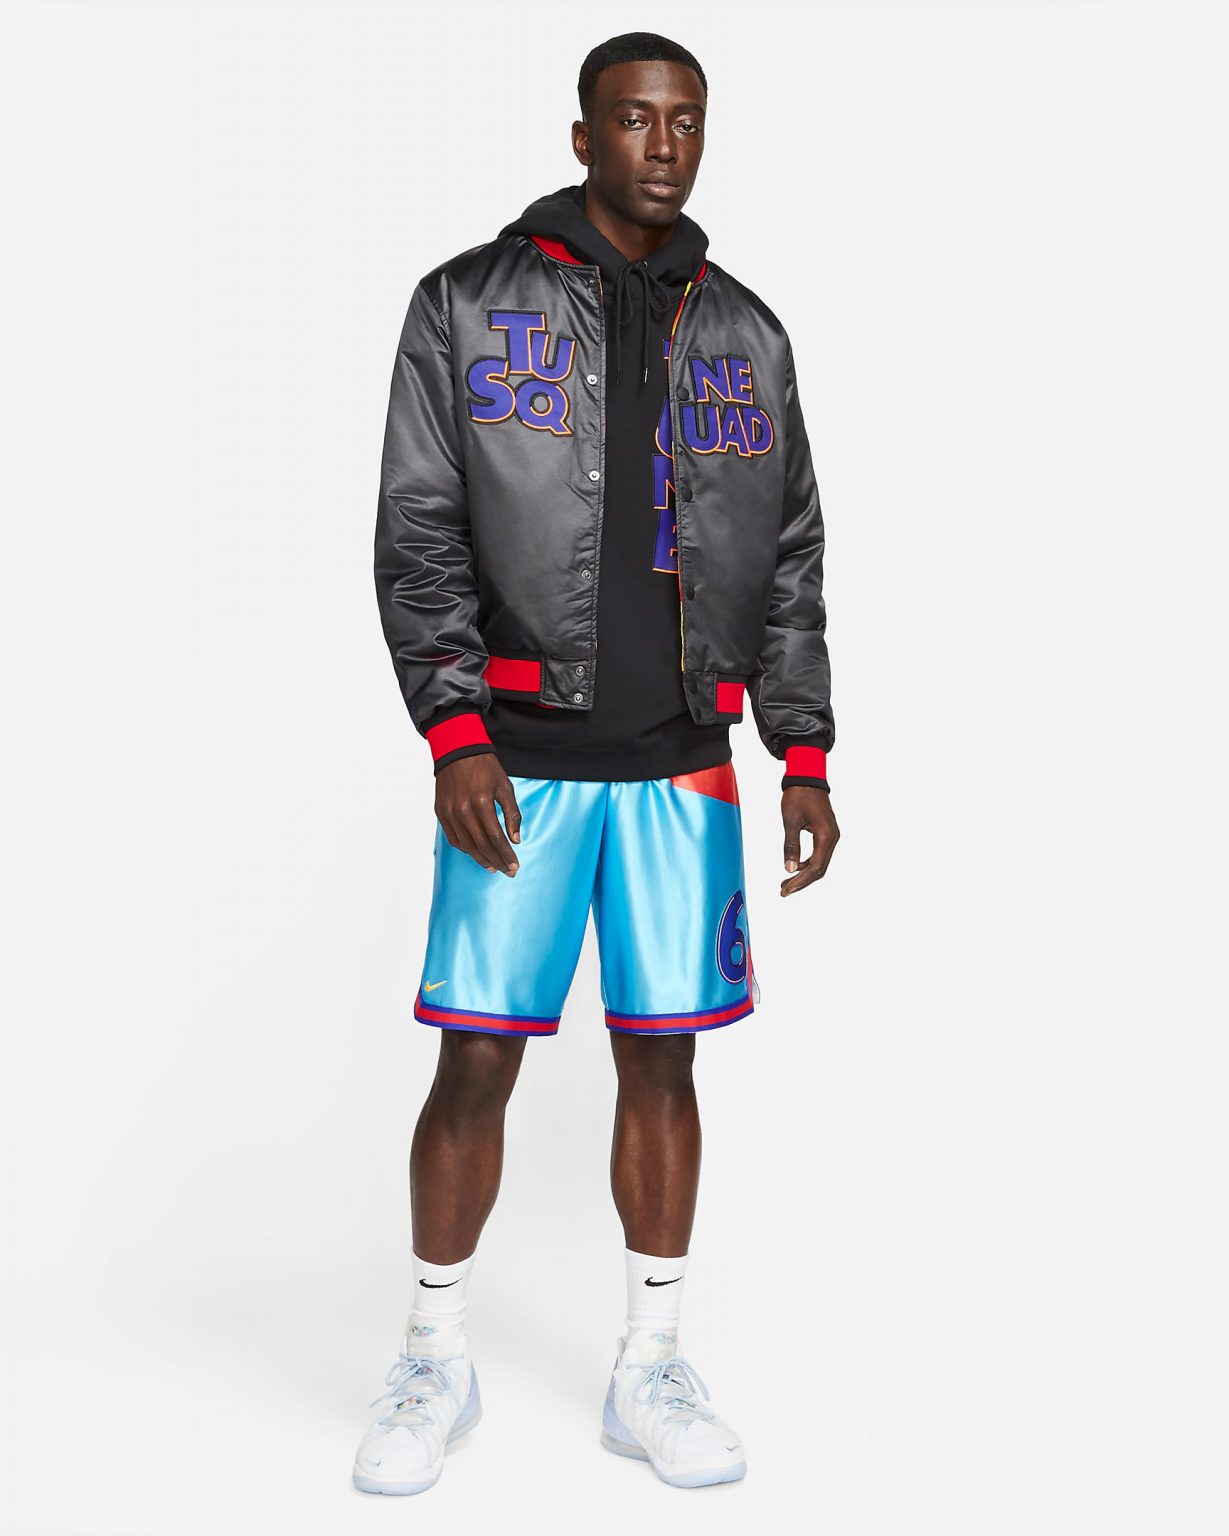 Nike LeBron Space Jam Tune Squad Jacket